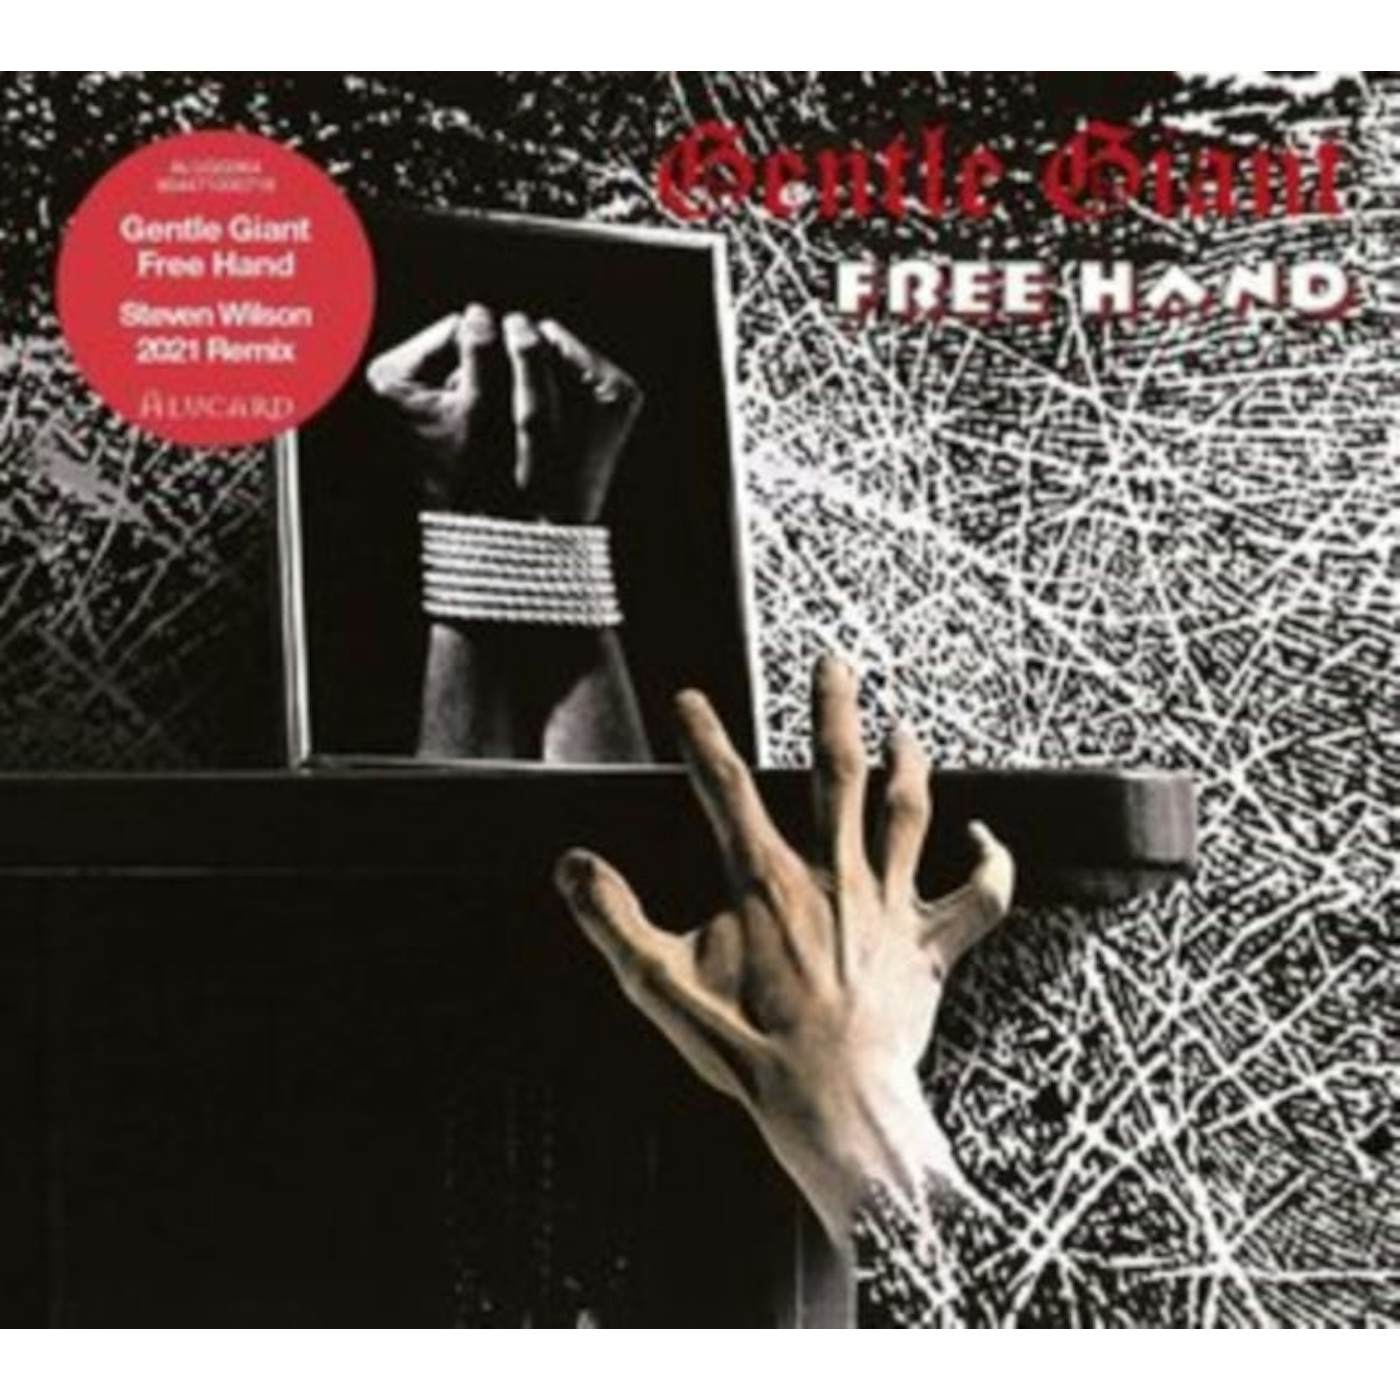 Gentle Giant CD - Free Hand (Steven Wilson Mix)